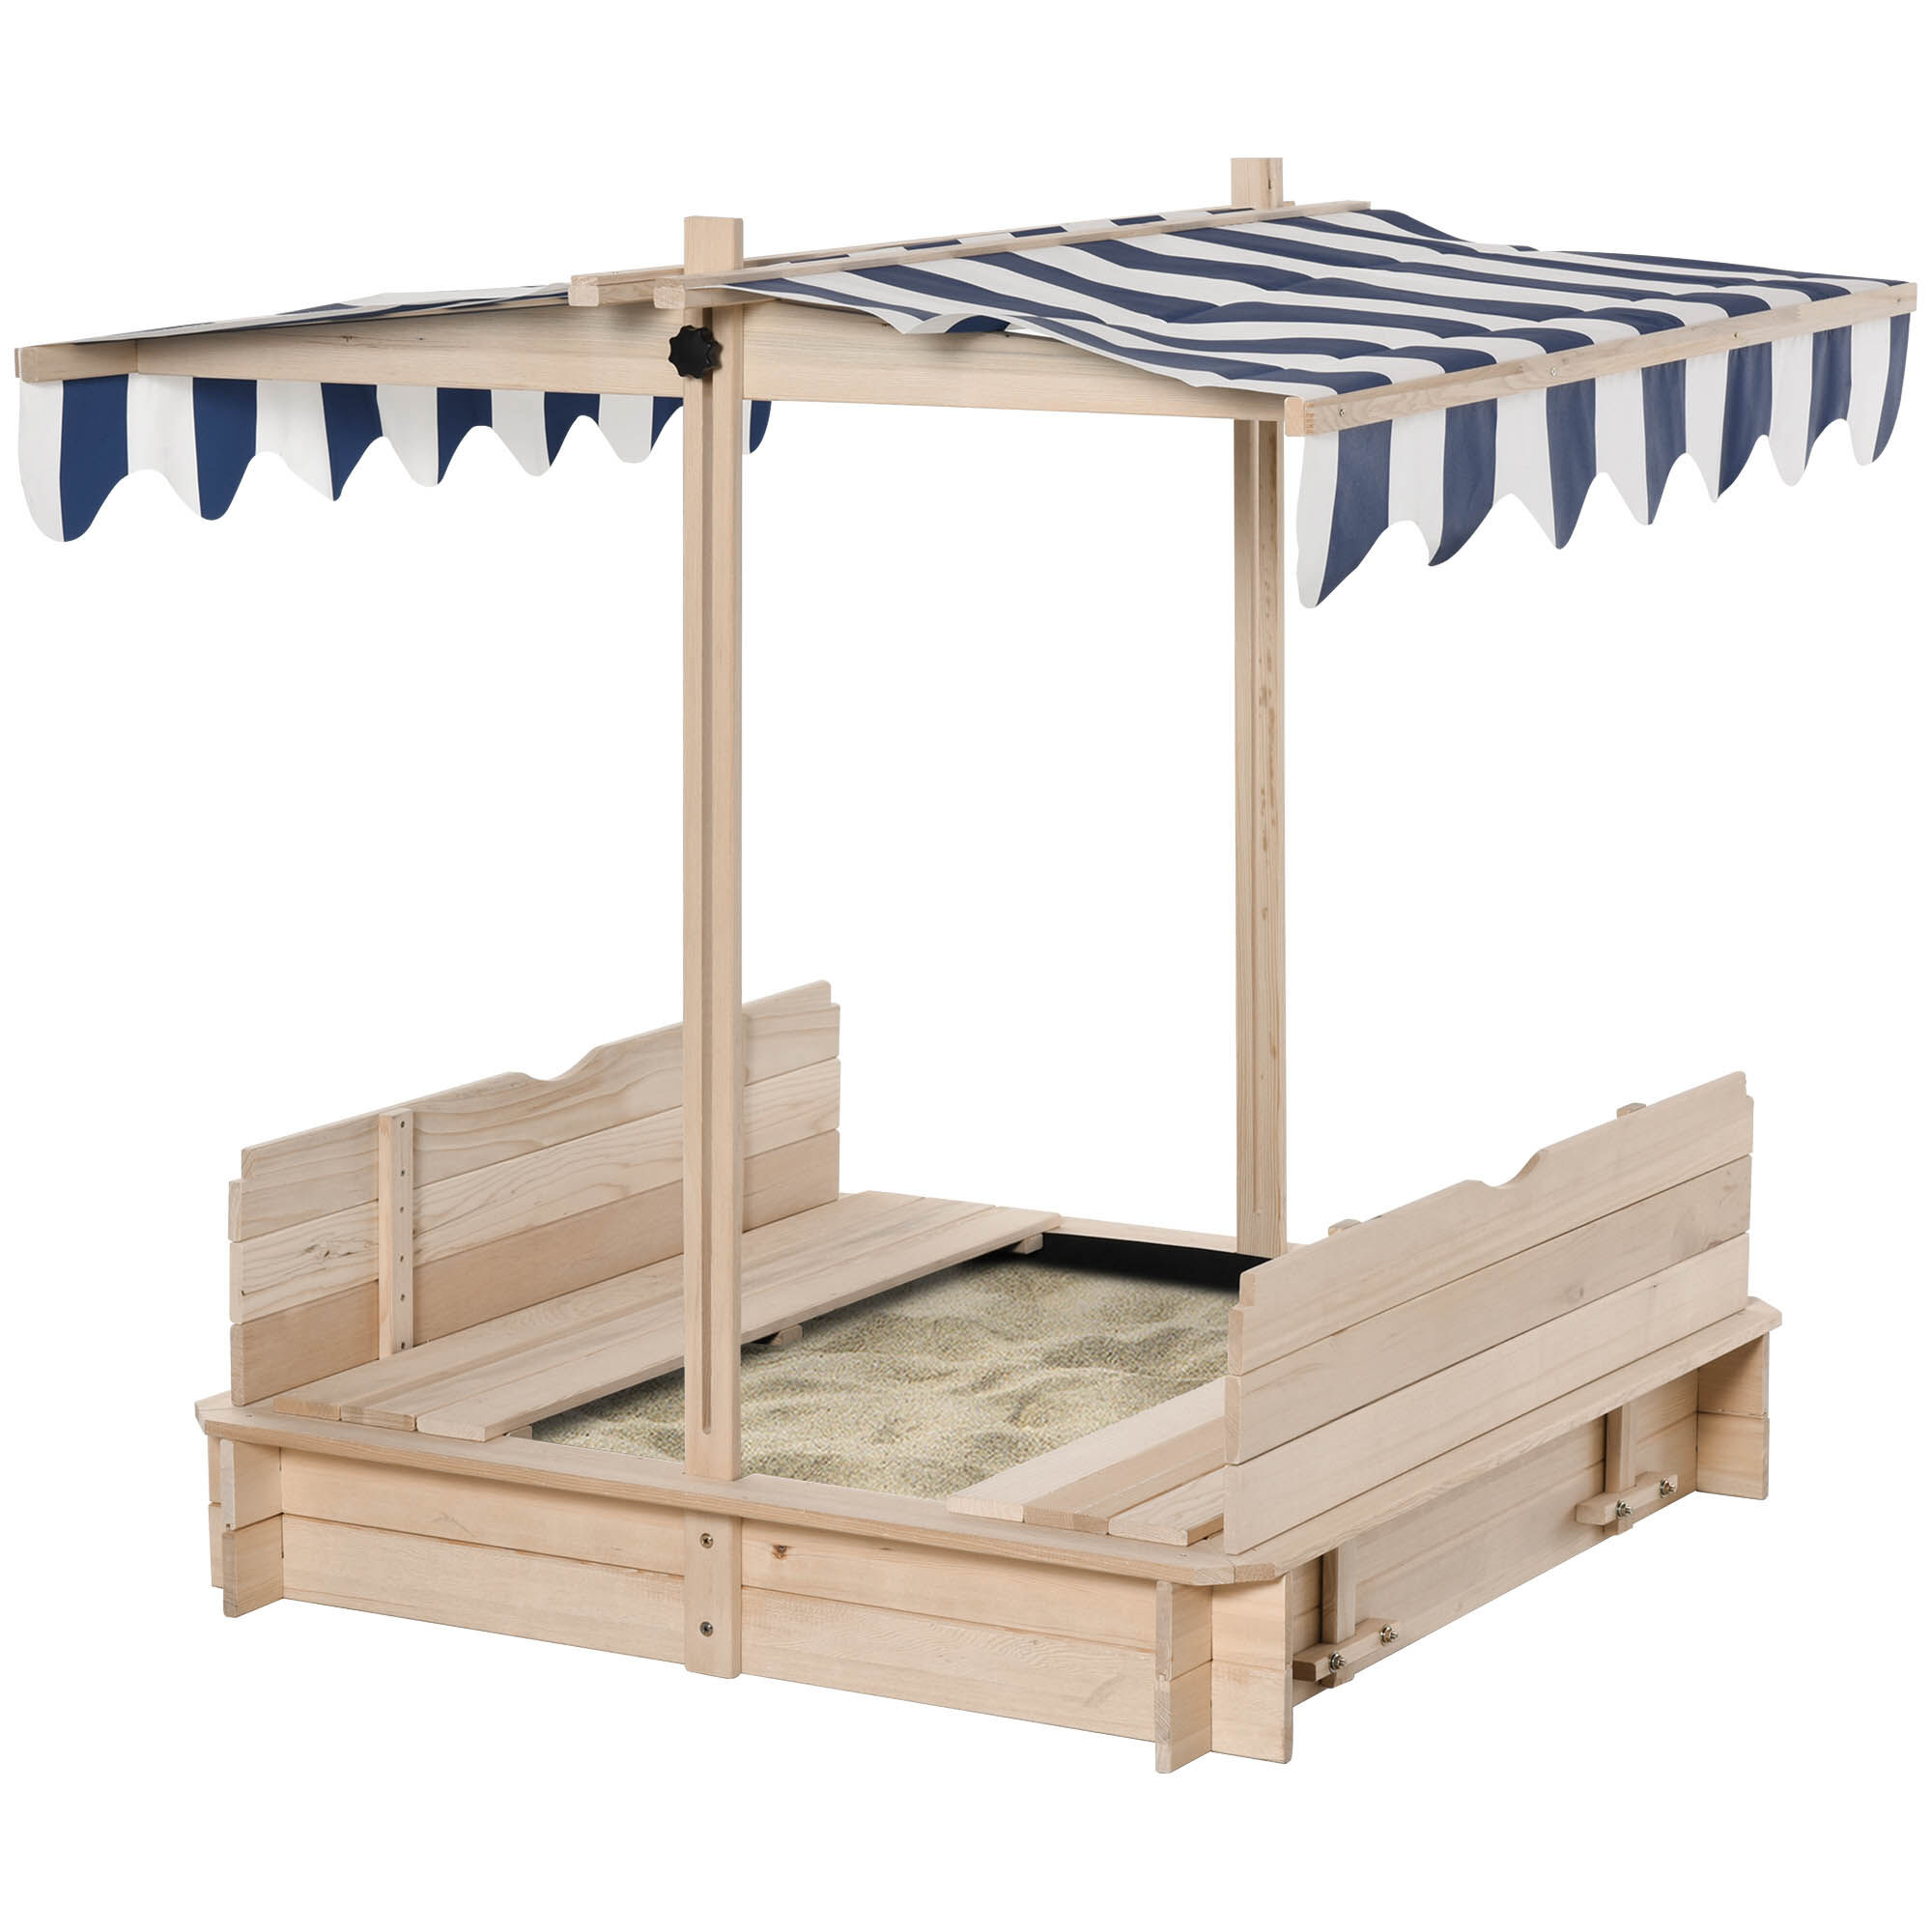 Outsunny Bac à sable carré en bois bancs, couvercle, auvent réglable Bleu 106x121x106cm